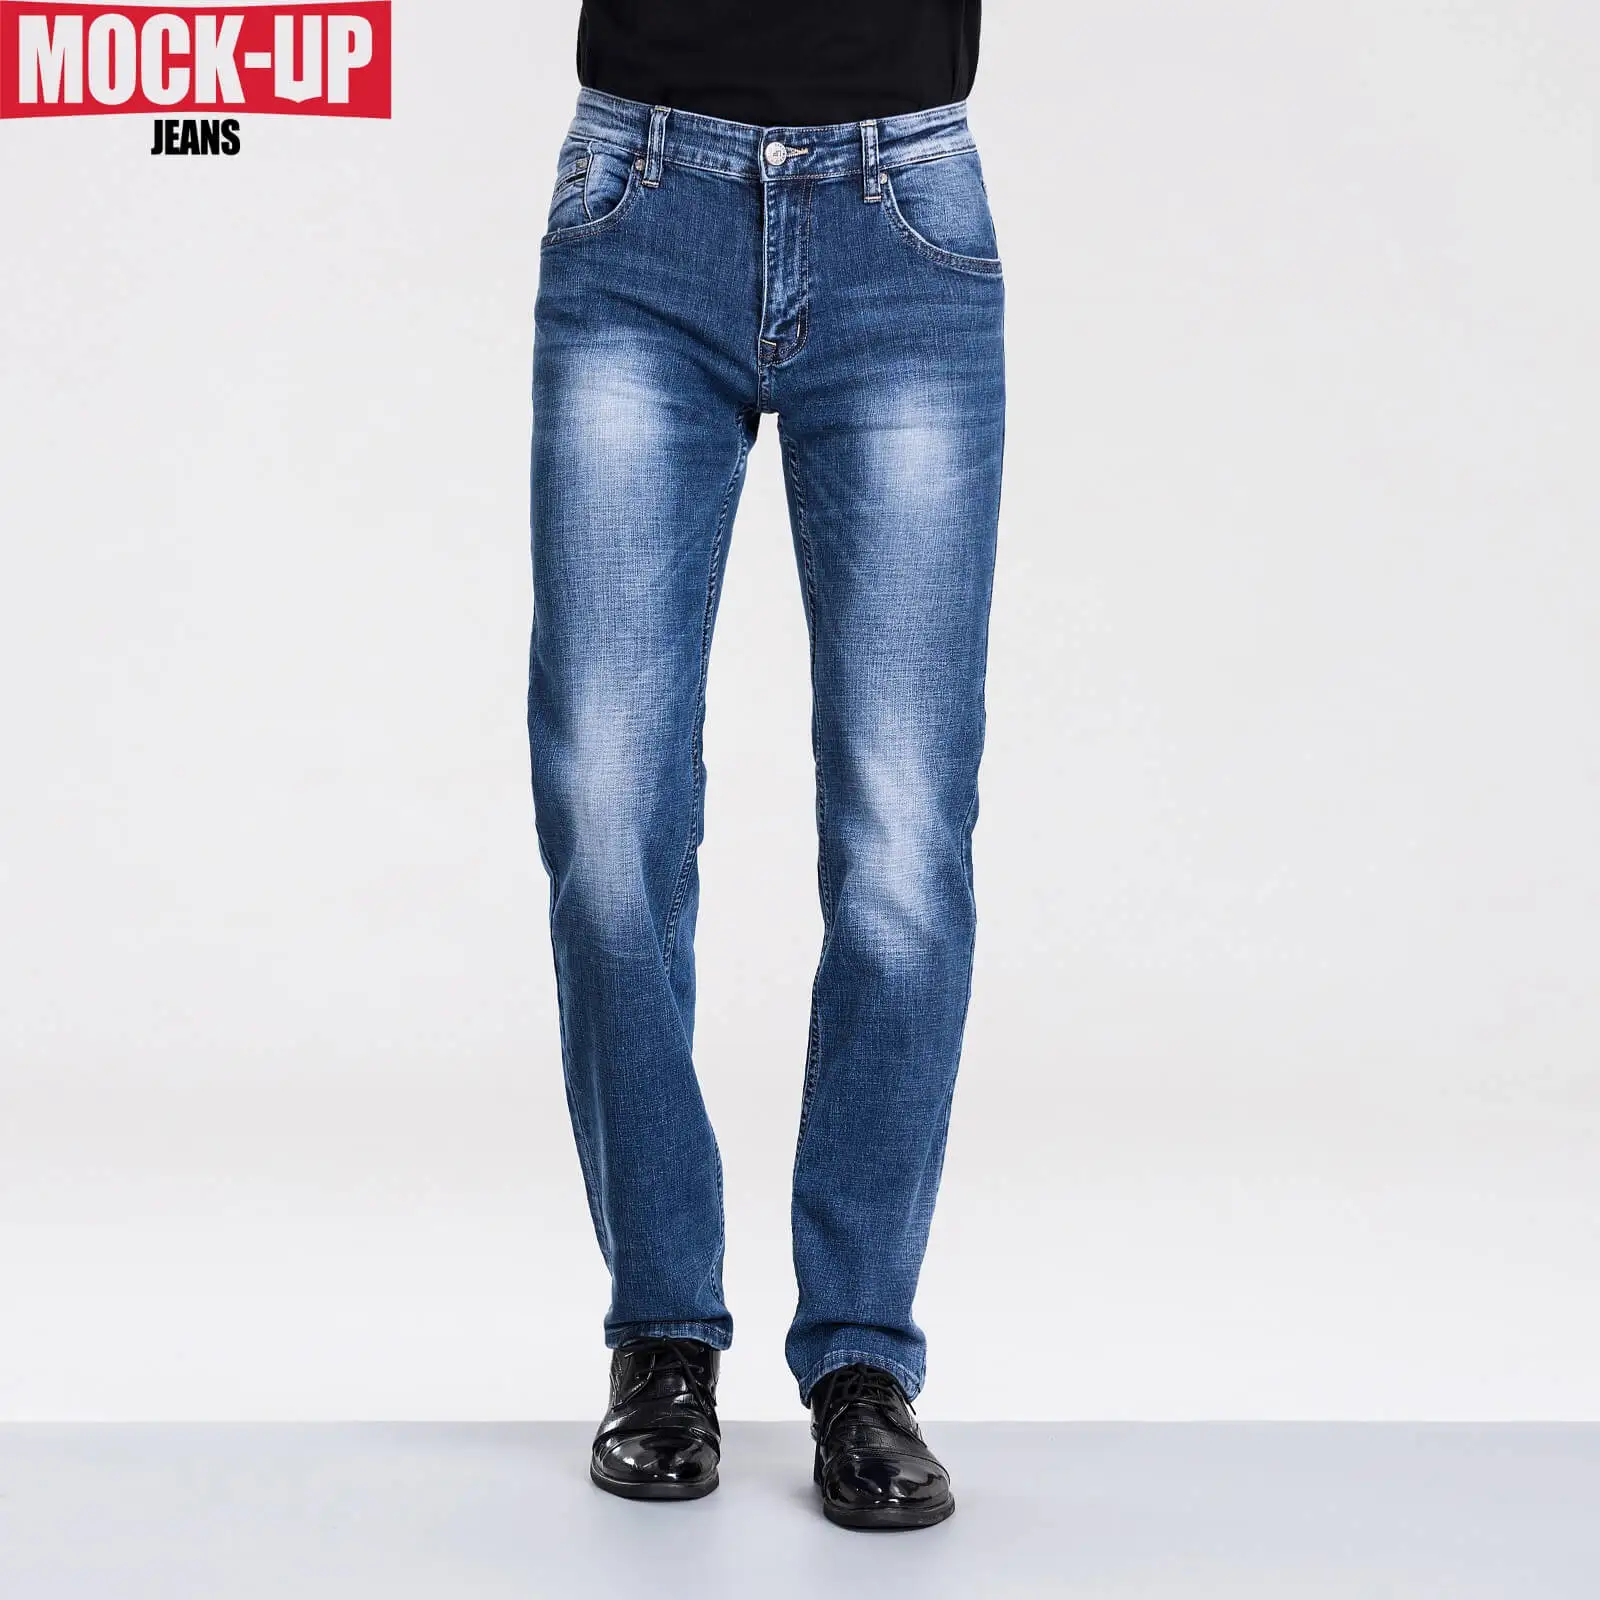 Бренд Mock Up, обтягивающие джинсы, мужские джинсовые штаны, мужские повседневные байкерские джинсы среднего веса, джинсы размера плюс 29-40, desquared2